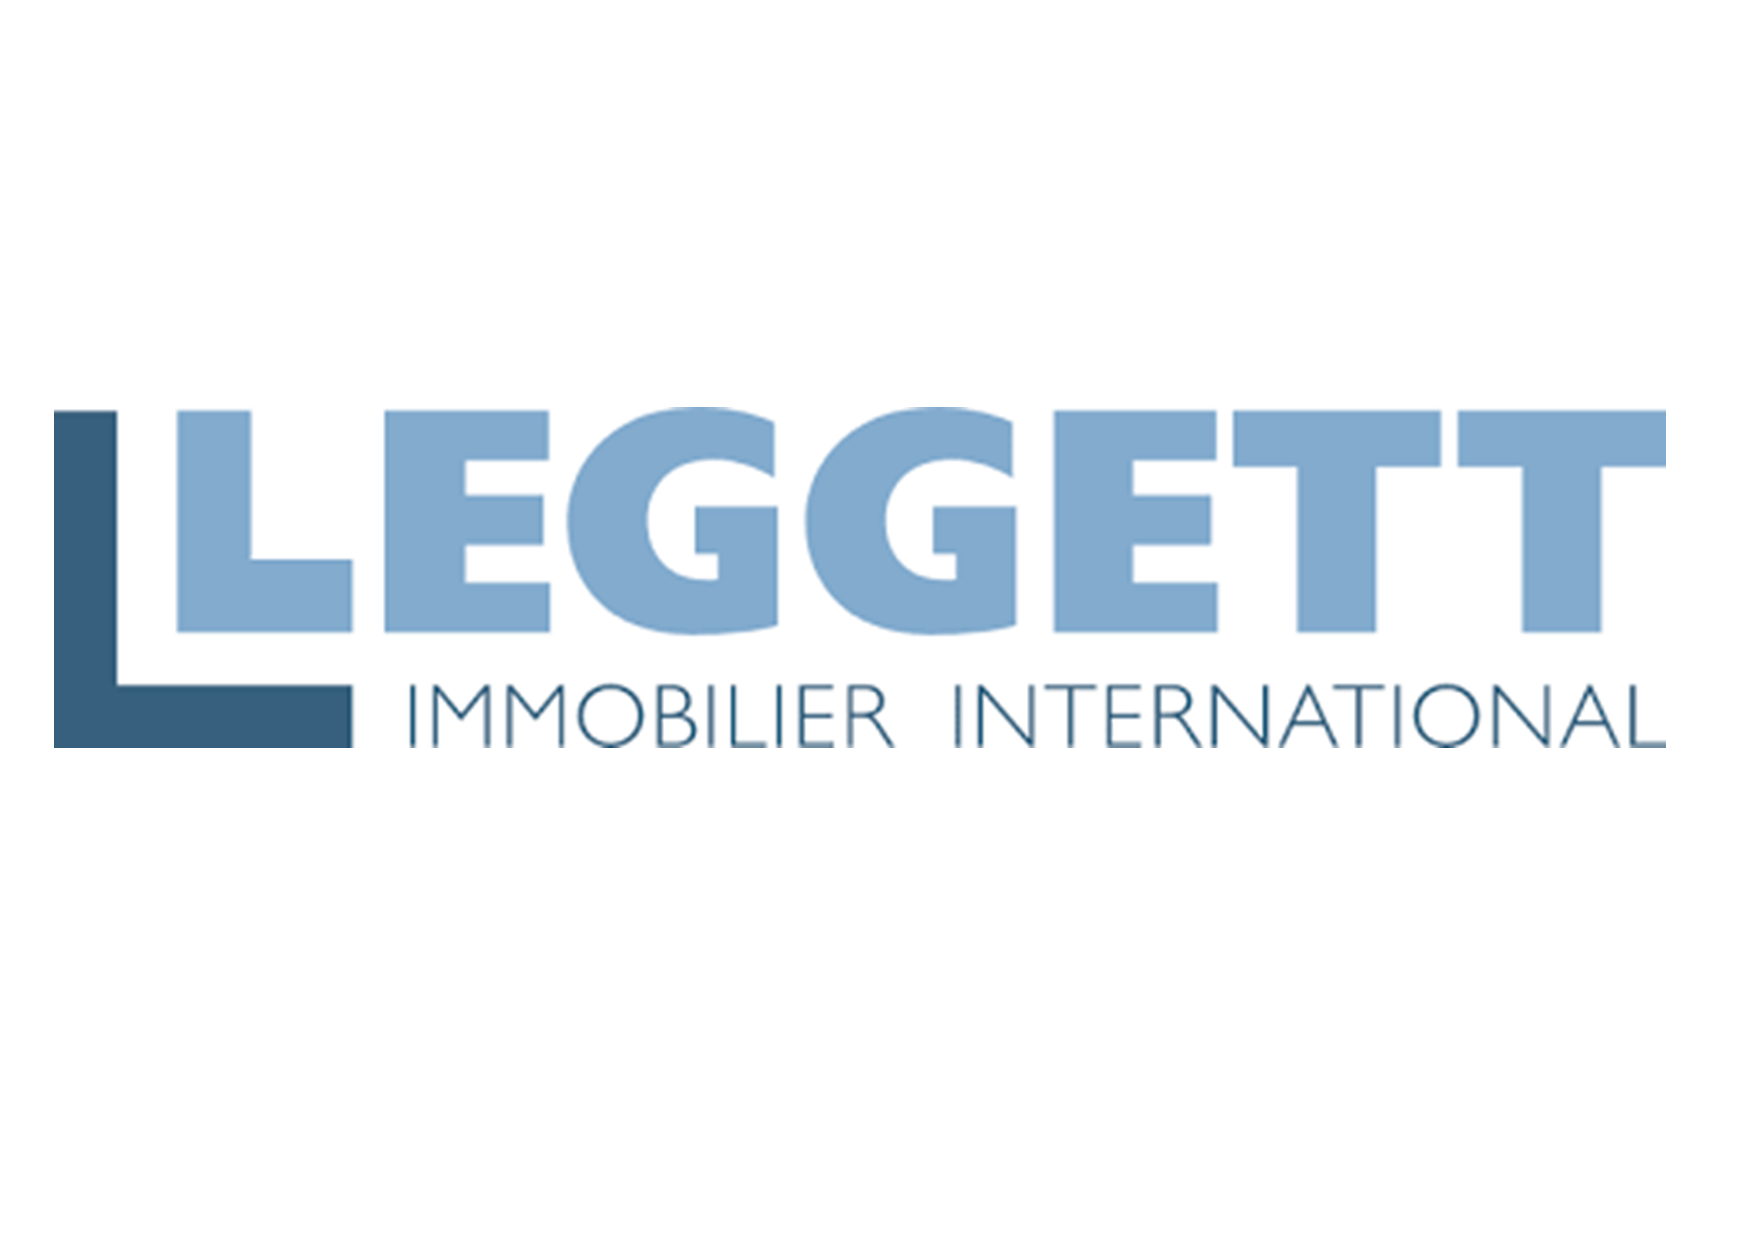 Leggett Immobilier International | Gerry Jackson Philip